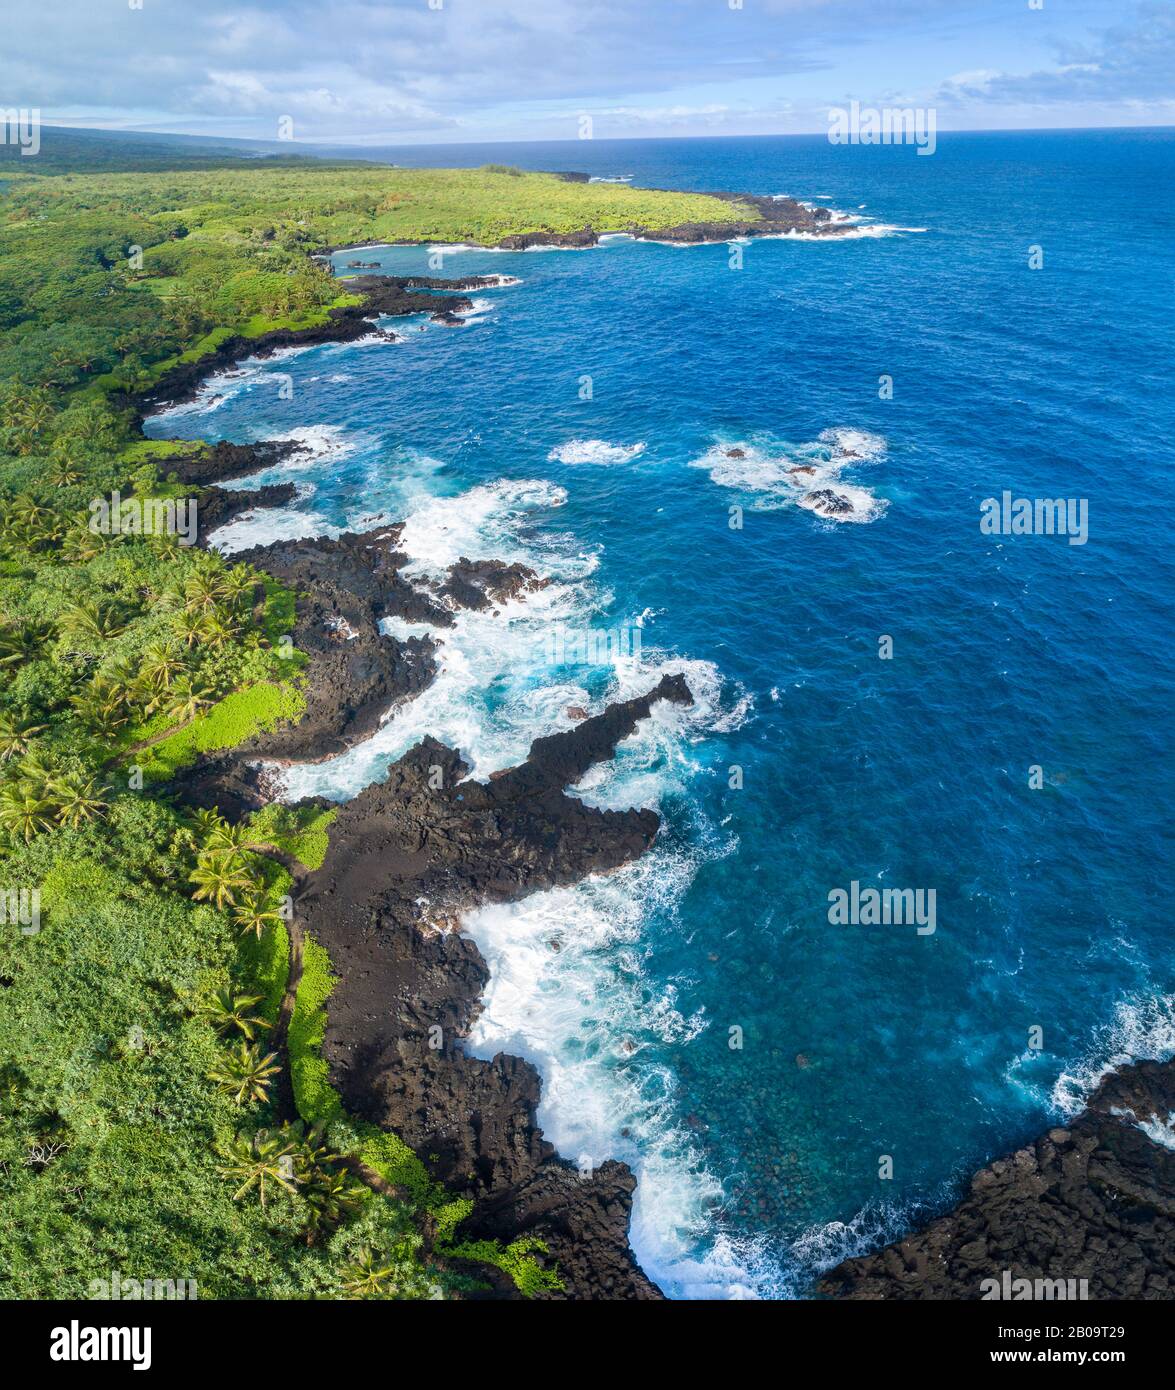 Ein Luftbild der Küstenlinie im Waianapanapa State Park, Hana, Maui, Hawaii. Der berühmte schwarze Sandstrand befindet sich in der Bucht oben auf dem Rahmen. Fiv Stockfoto